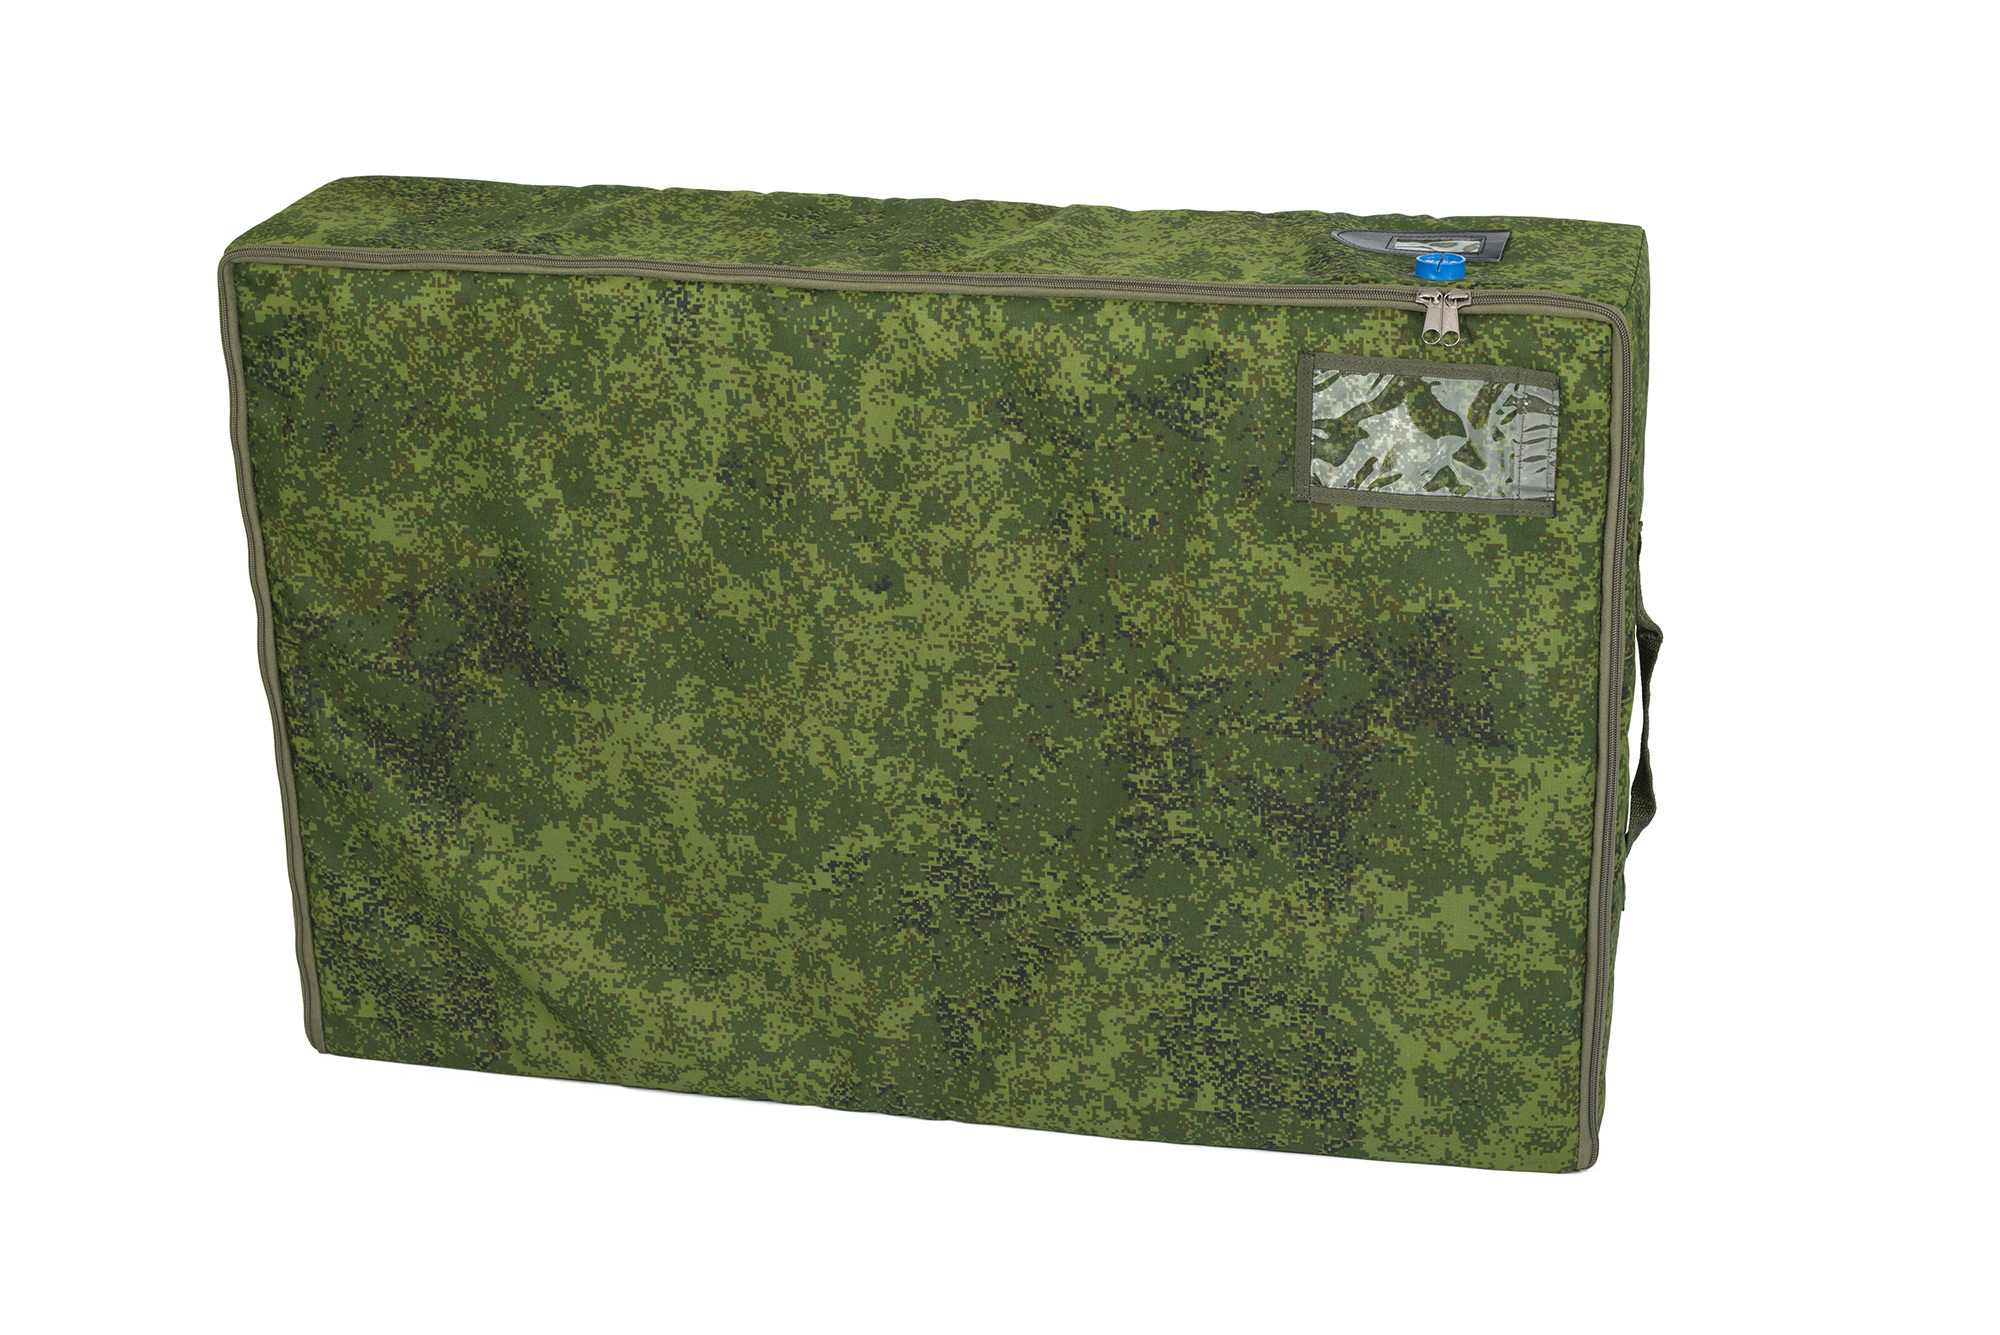 УМБ 2 Предназначен для хранения учебной материальной базы военнослужащих. Переносится за ручки или как рюкзак, Сумка оптом, спб